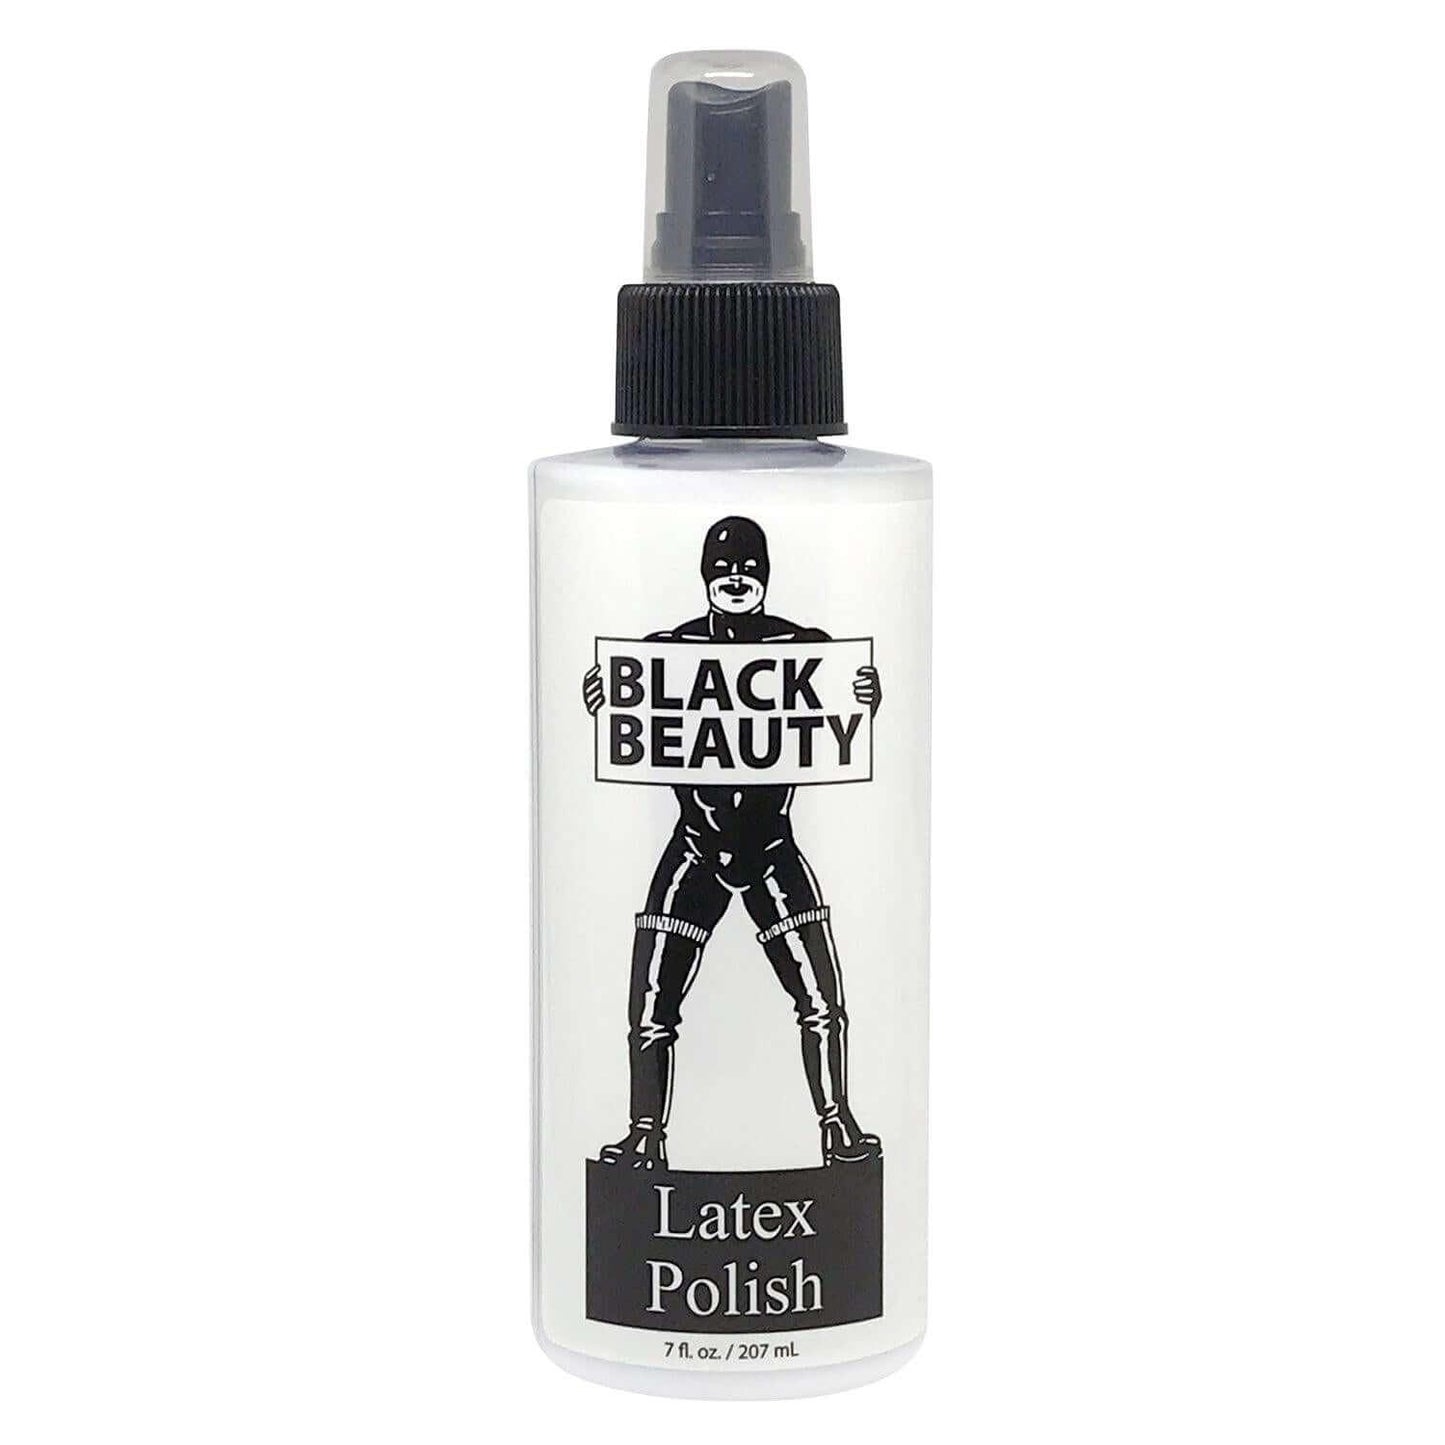 Black Beauty Latex Polish Spray Bottle 8oz/236ml - Take A Peek